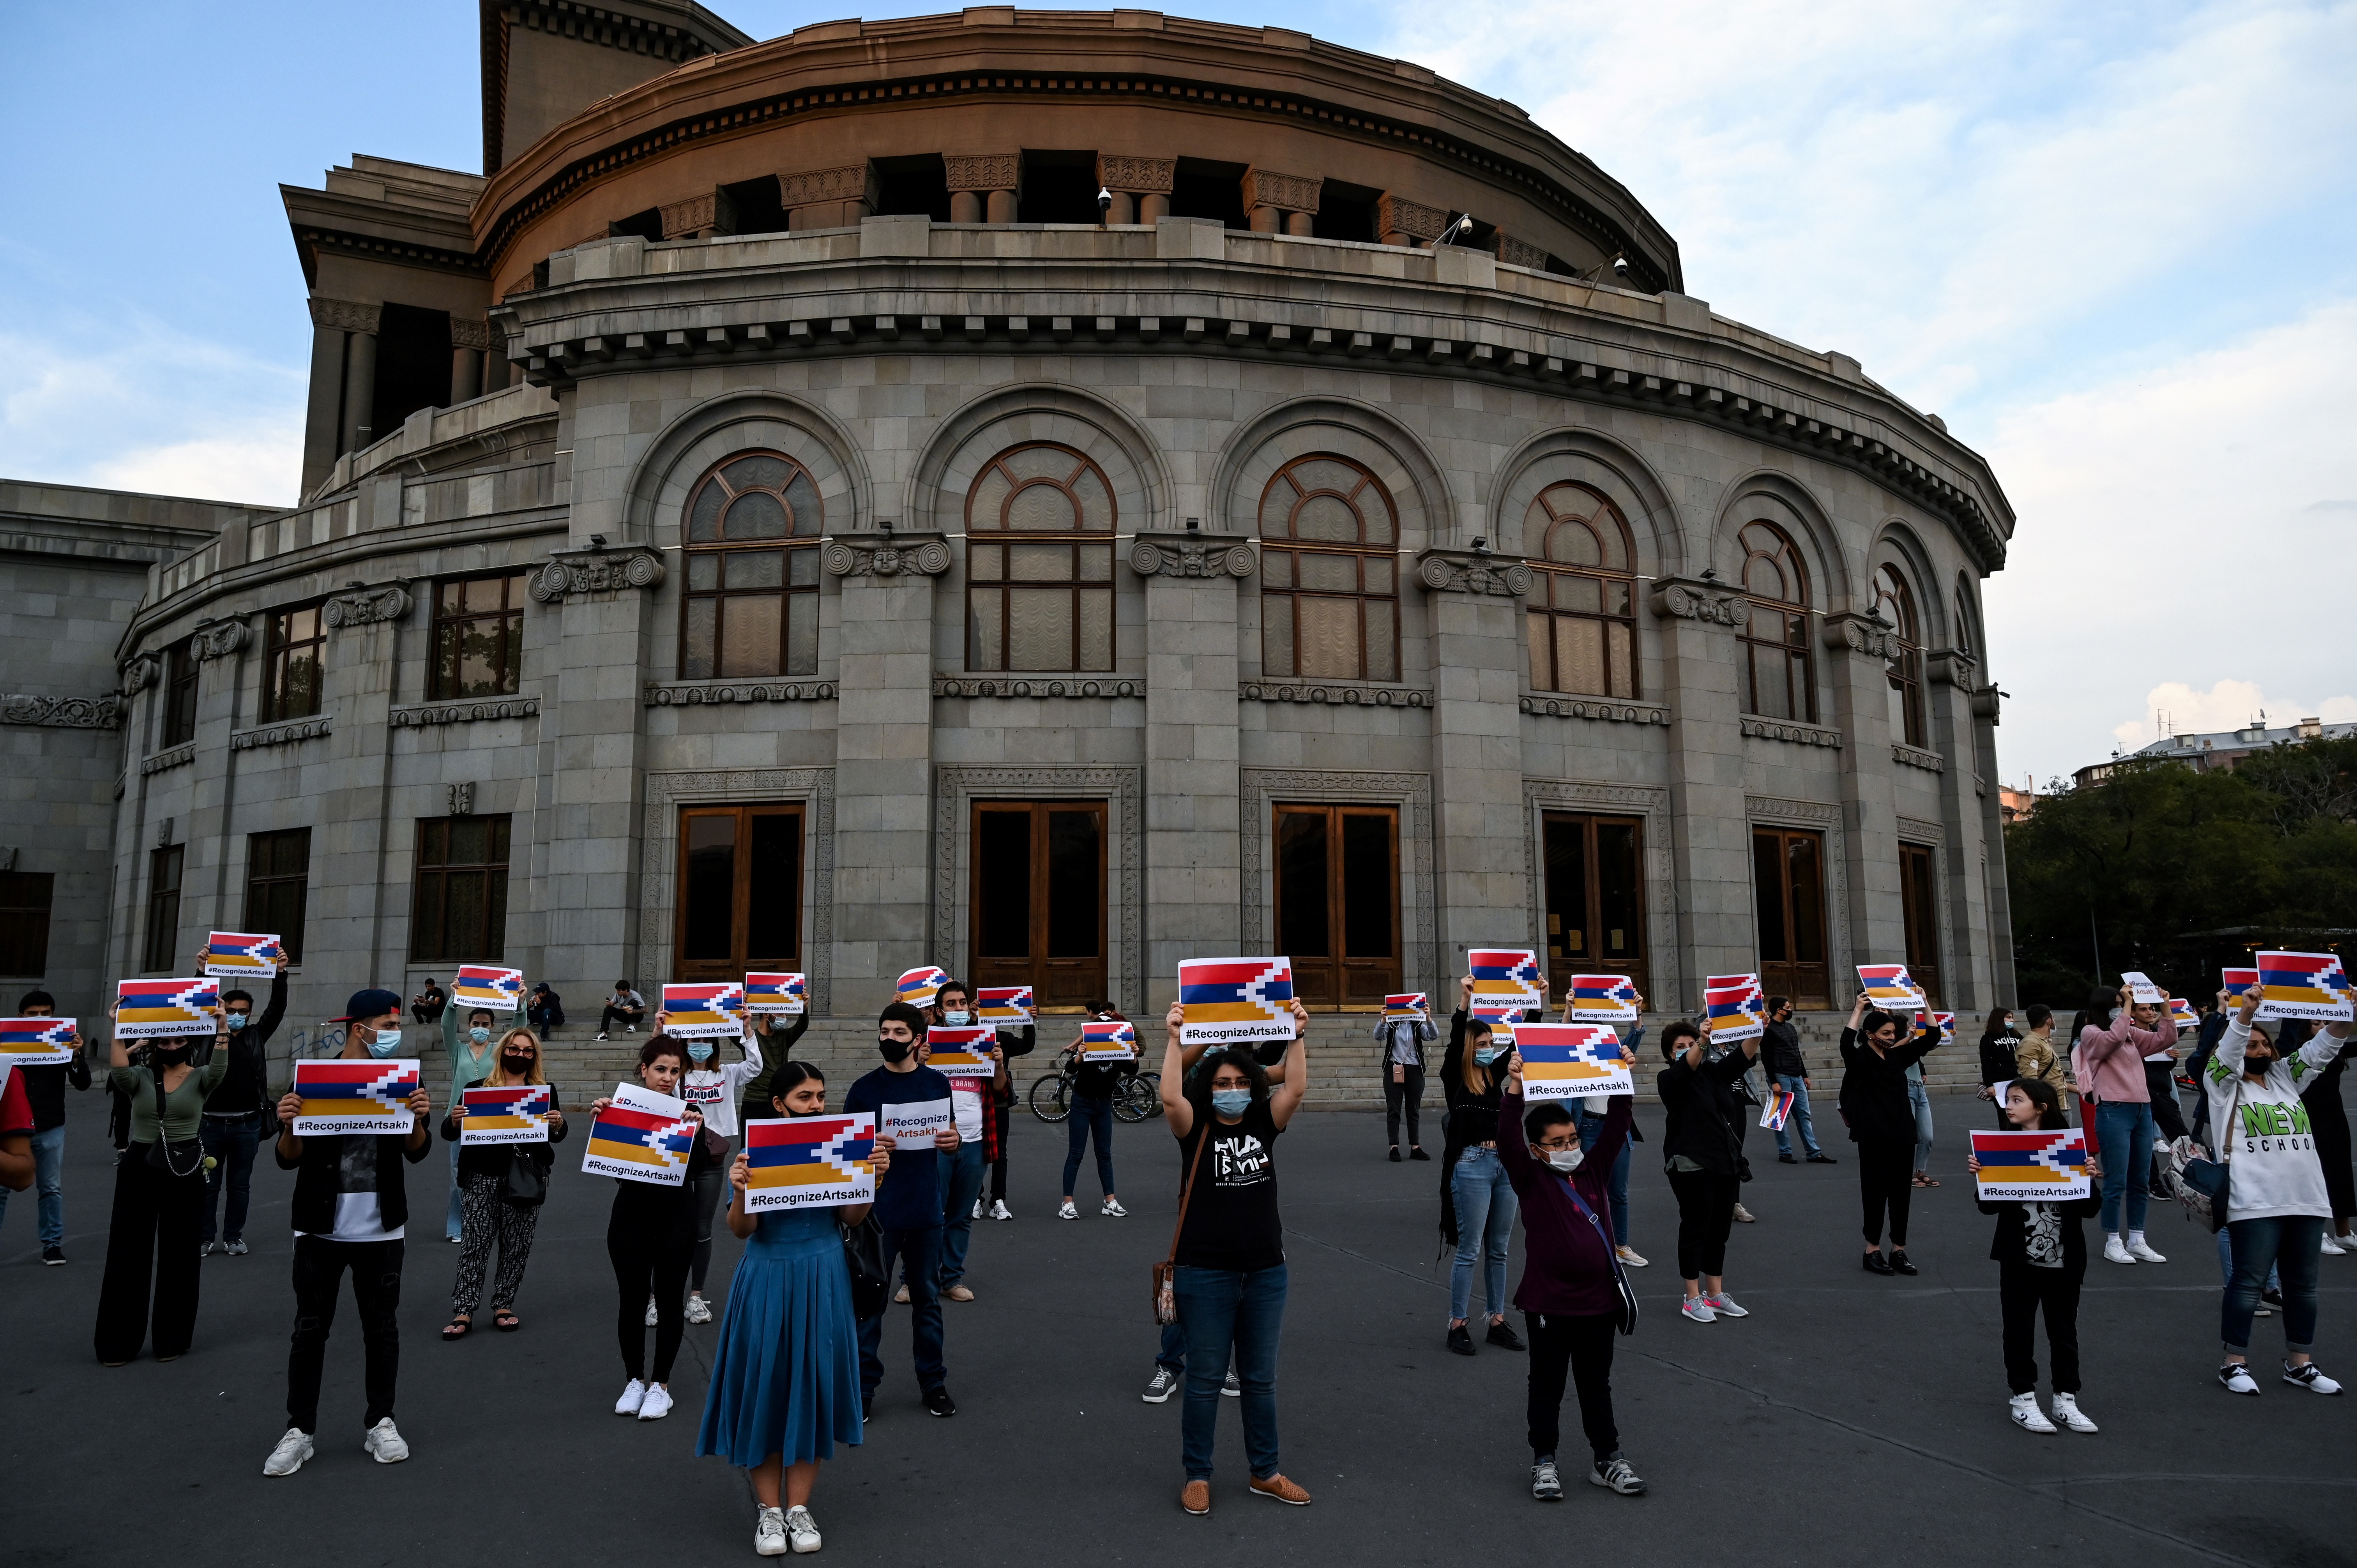 Los participantes sostienen carteles con el hashtag "Reconocer Artsaj" durante un flash mob para apoyar a la separatista región de Nagorno-Karabaj en Ereván el 4 de octubre de 2020. (Foto por - / AFP)